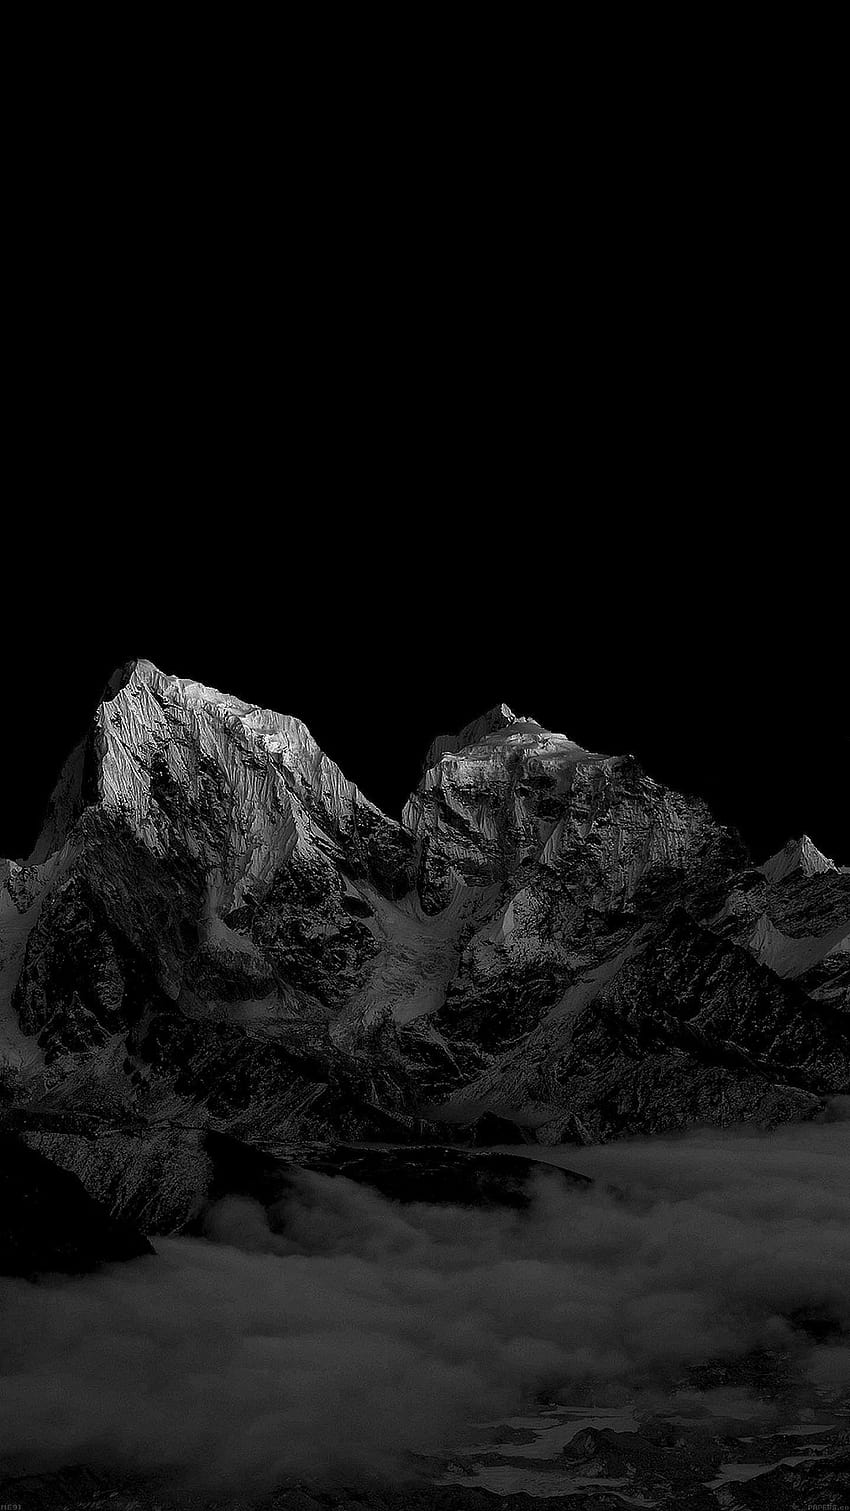 Pegunungan AMOLED ⛰ [1440x2560] : Latar belakang AMOLED, lanskap AMOLED hitam wallpaper ponsel HD